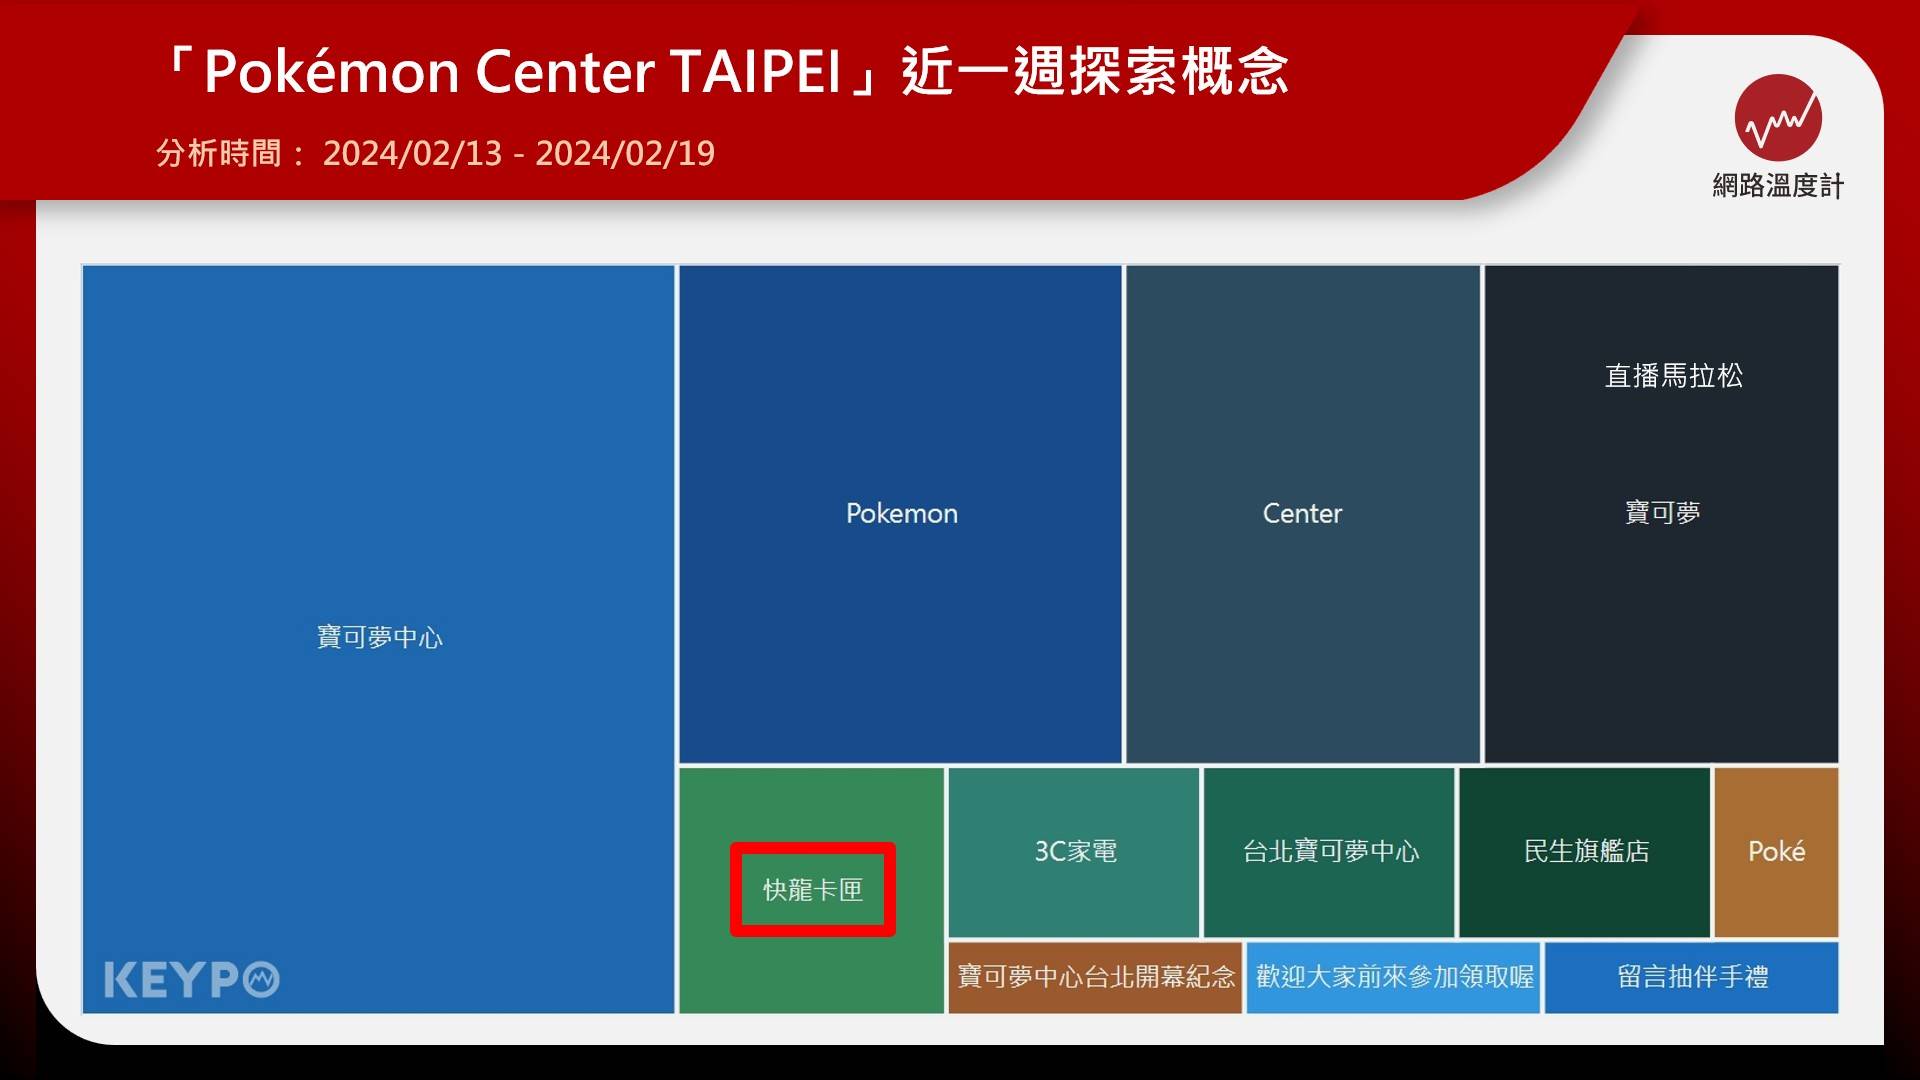 「Pokémon Center TAIPEI」近一週探索概念